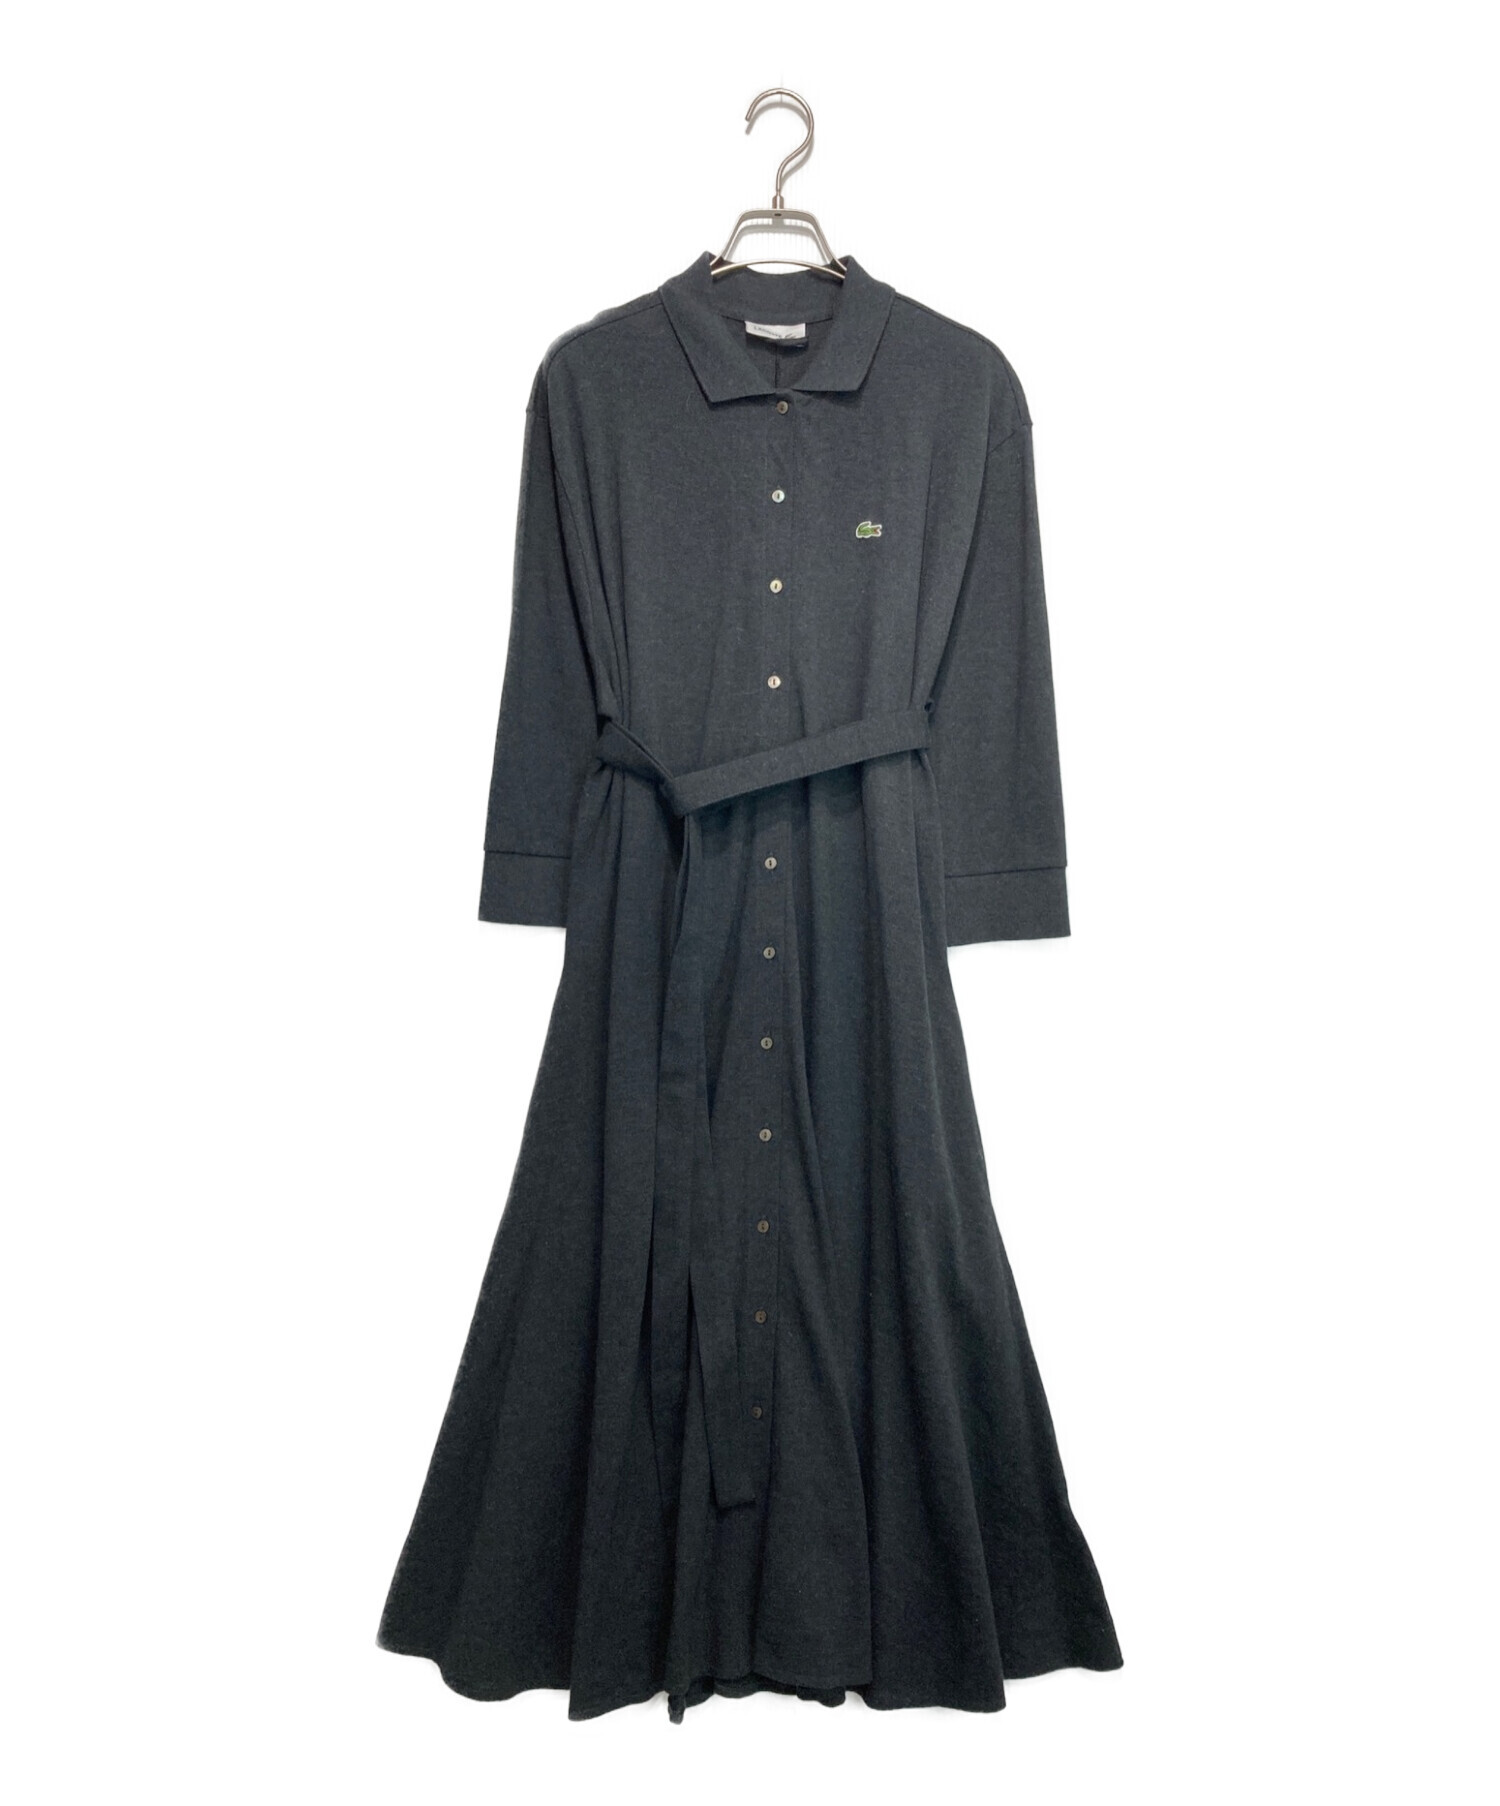 LACOSTE (ラコステ) ベルトデザインポロシャツドレス グレー サイズ:38 未使用品